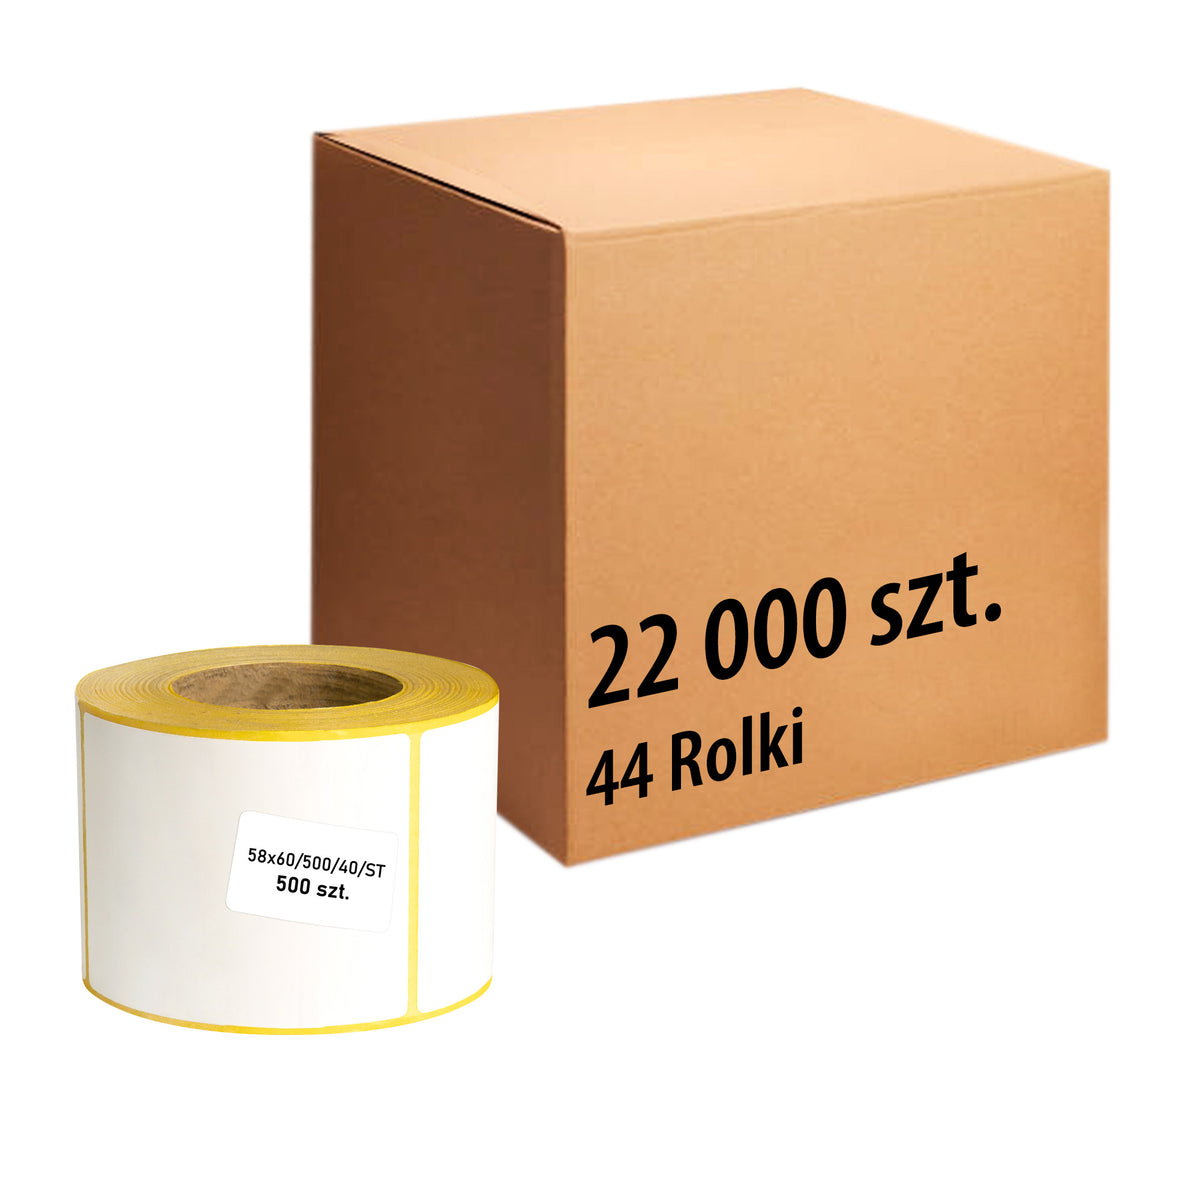 Thermo-Etiketten 58x60mm 500' 44 Rollen- 22000 Stück Etiketten